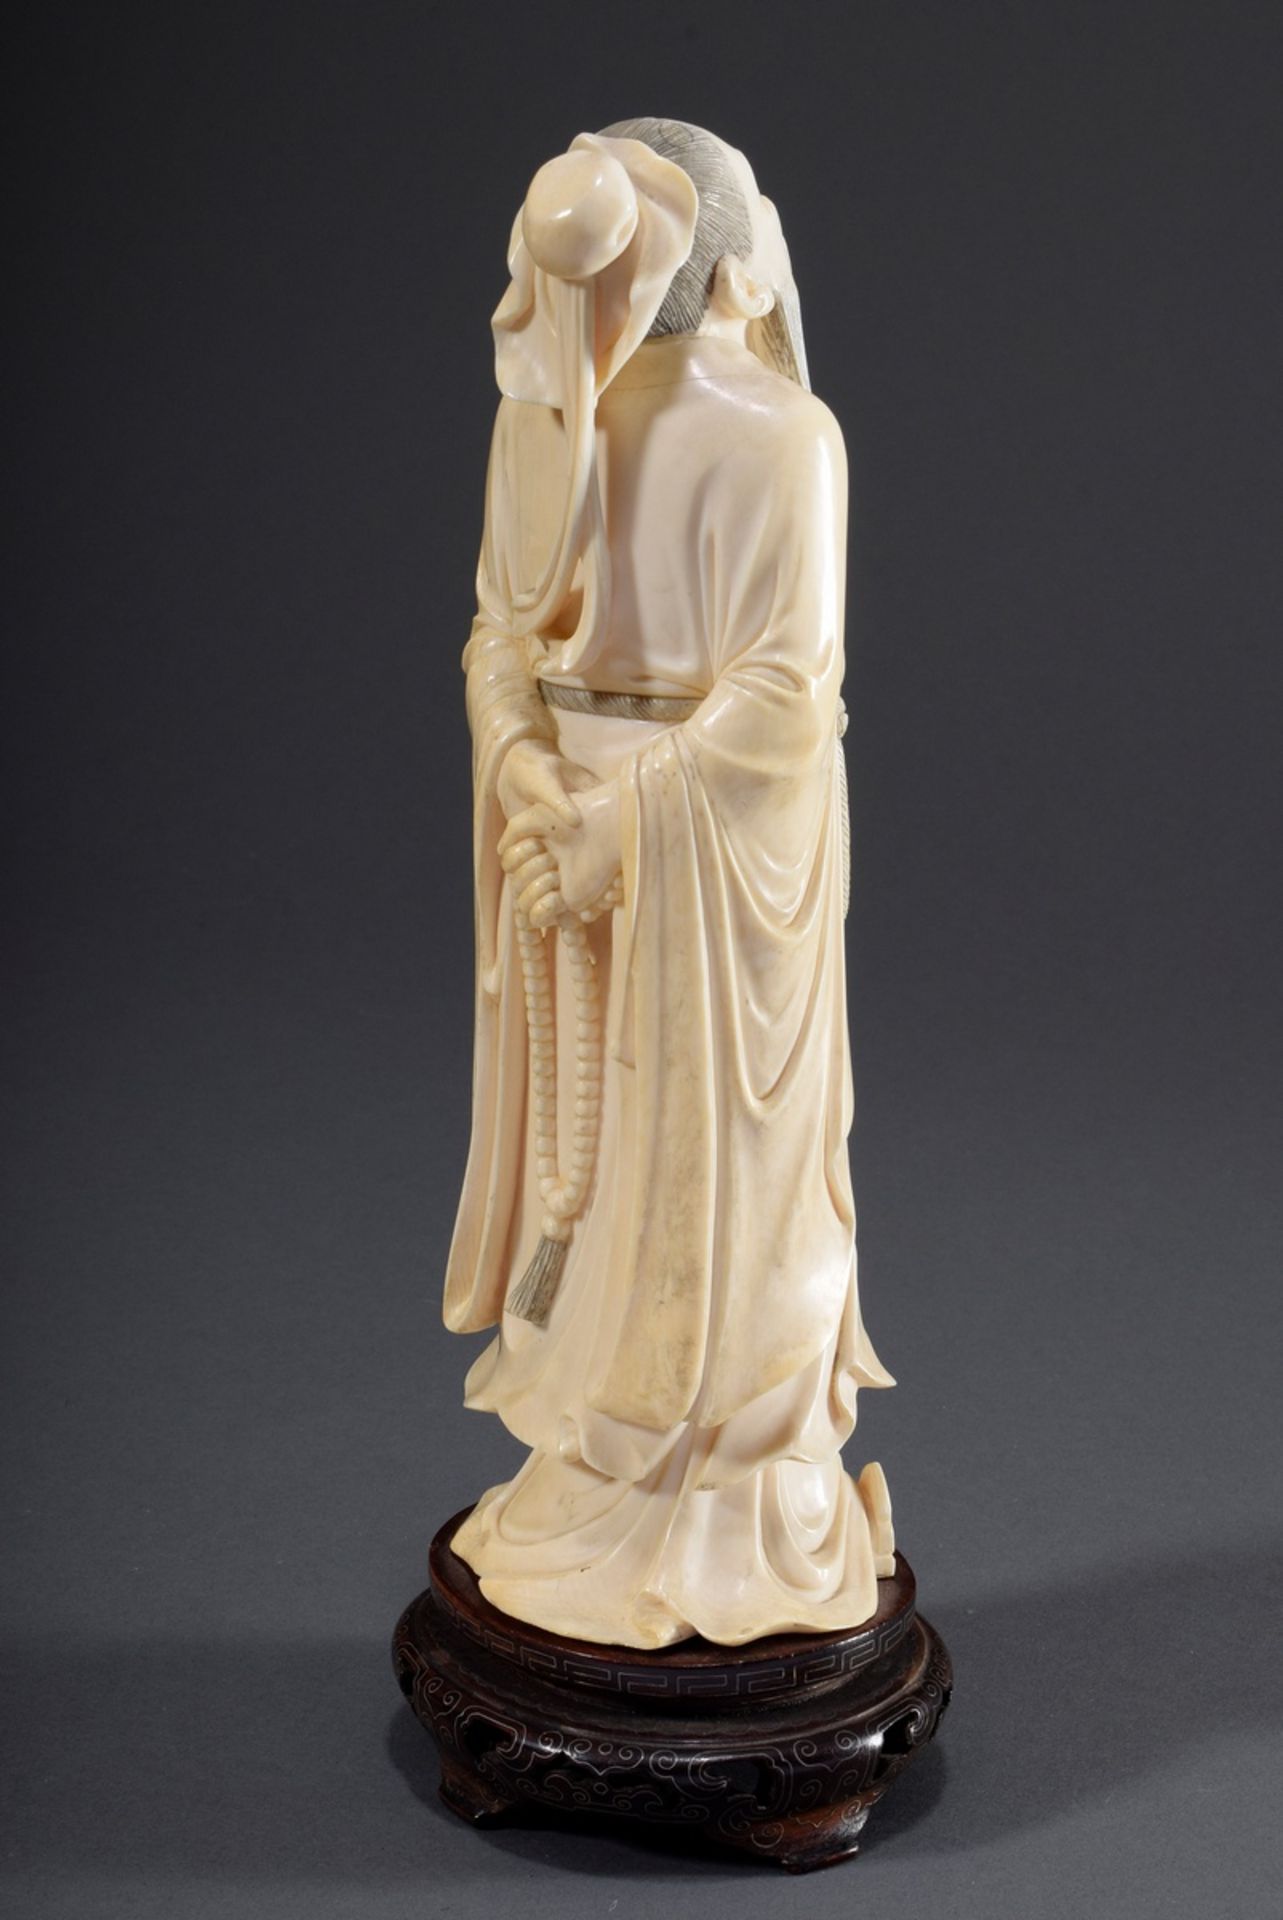 Chinesische Elfenbein Schnitzerei "Konfuzius, de | Chinese ivory carving "Confucius, looking up to - Bild 4 aus 9